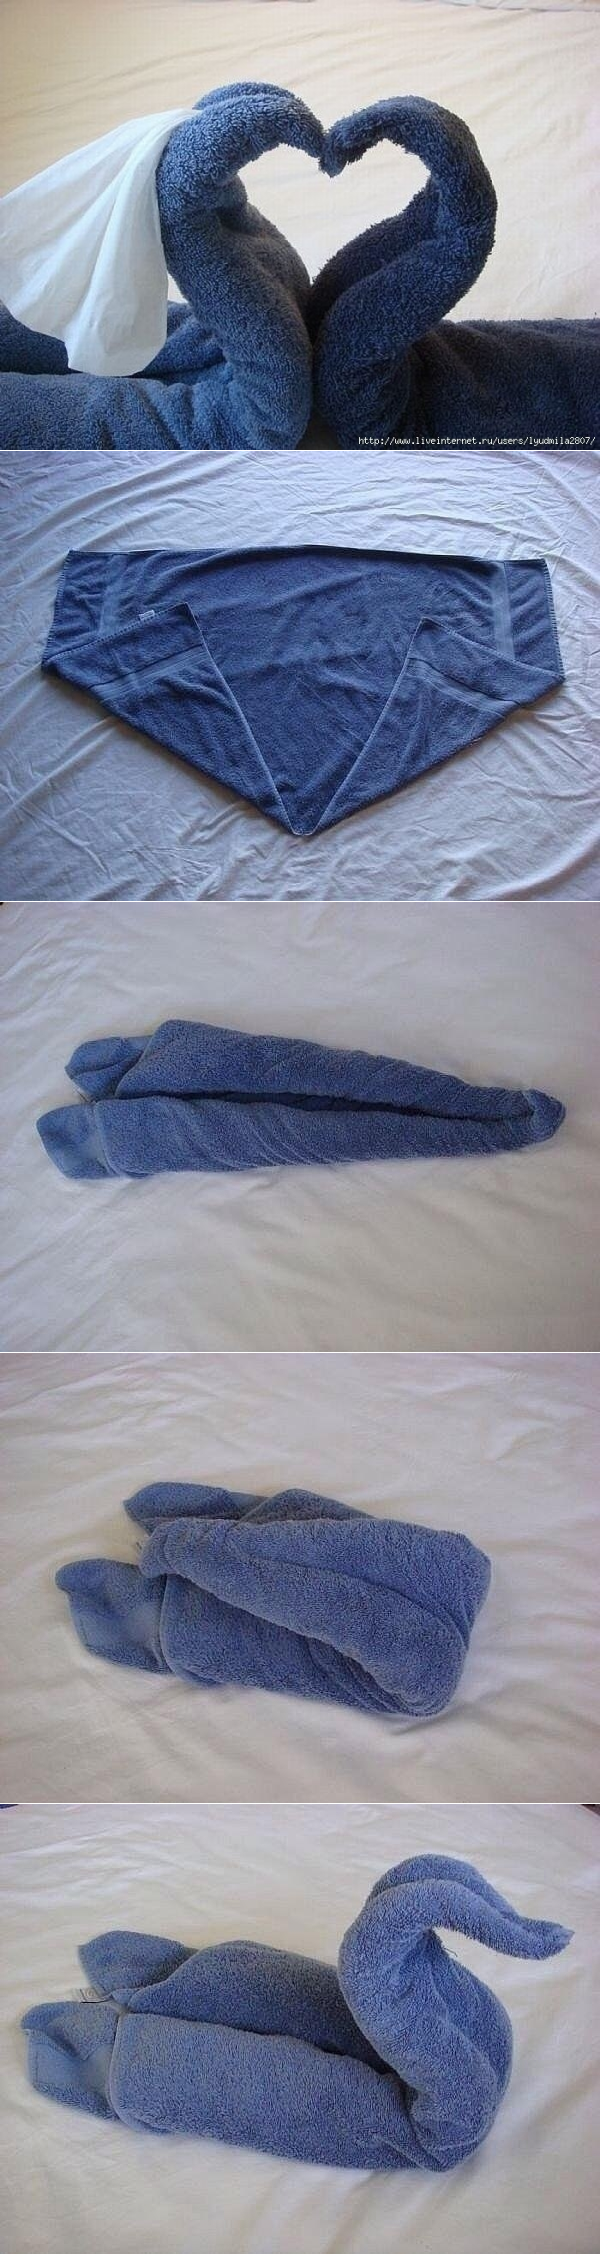 Как сделать лебедя из полотенца: пошаговая инструкция